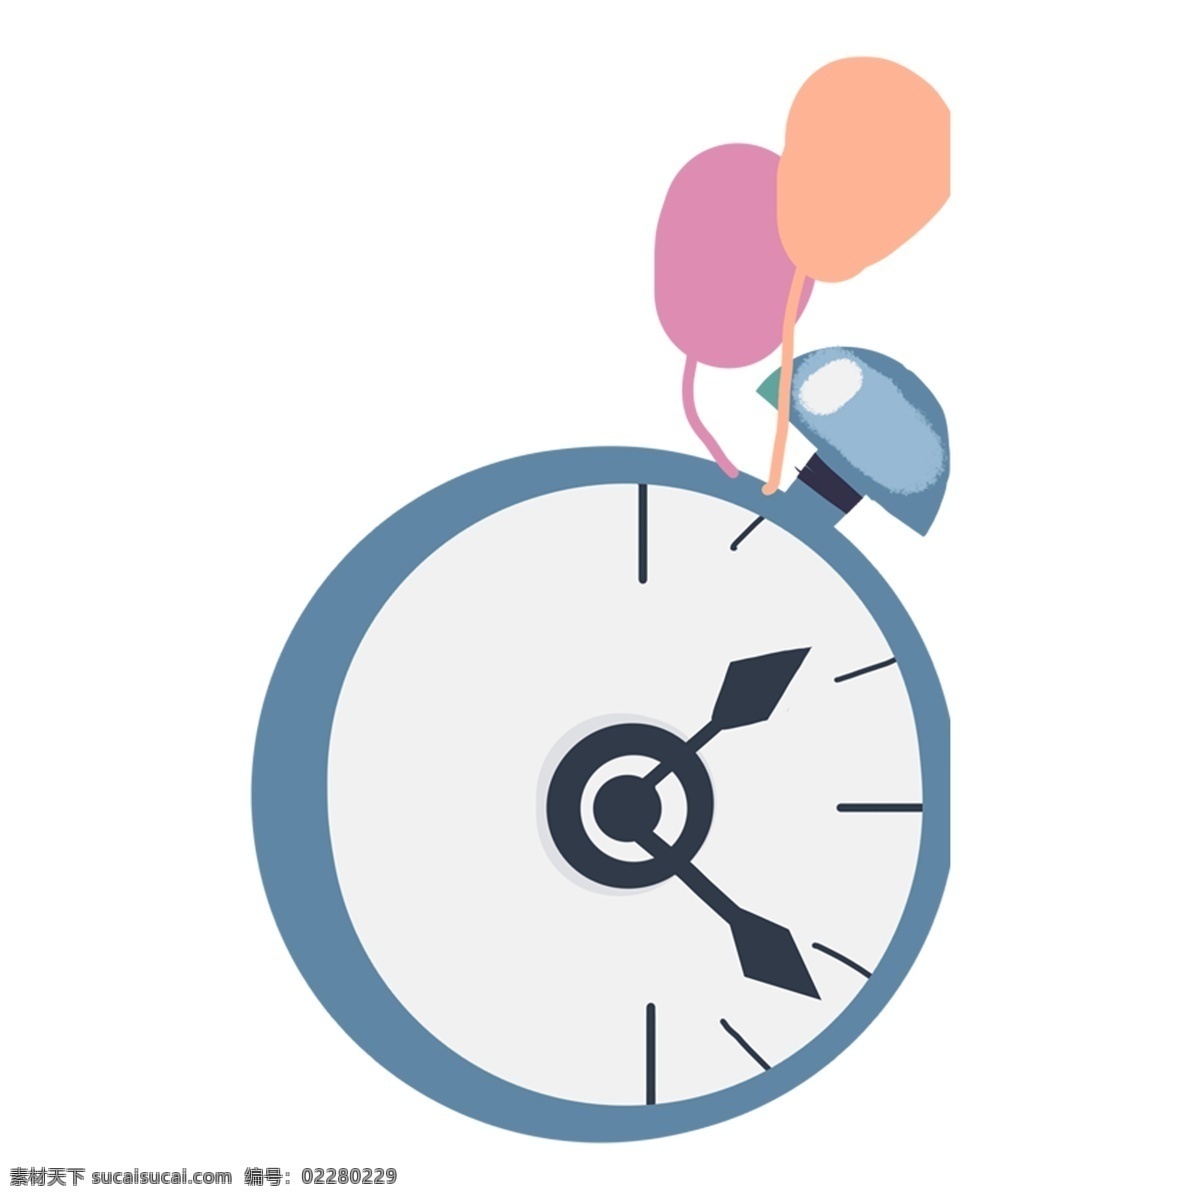 蓝色 粉色 橙色 闹钟 钟表 时间 卡通 手绘 简约 简单 简笔画 气球 多彩 平面设计